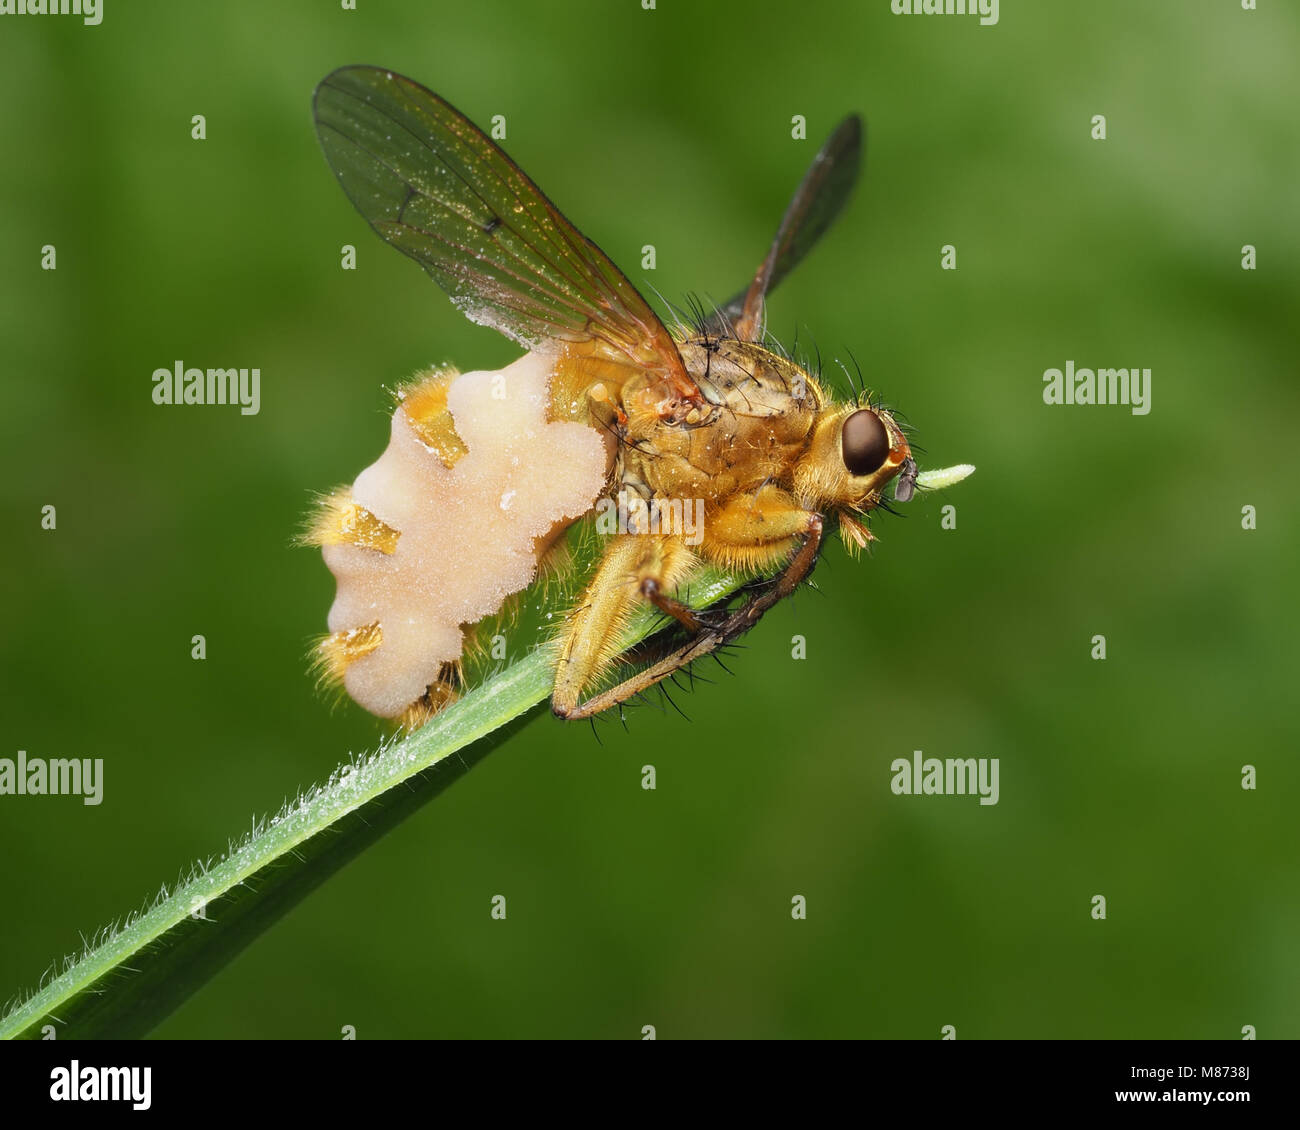 Estiércol amarillo (Scathophaga stercoraria mosca) infectados con el hongo (Entomophthora sp.) en la parte superior de una hoja de hierba. Tipperary, Irlanda Foto de stock